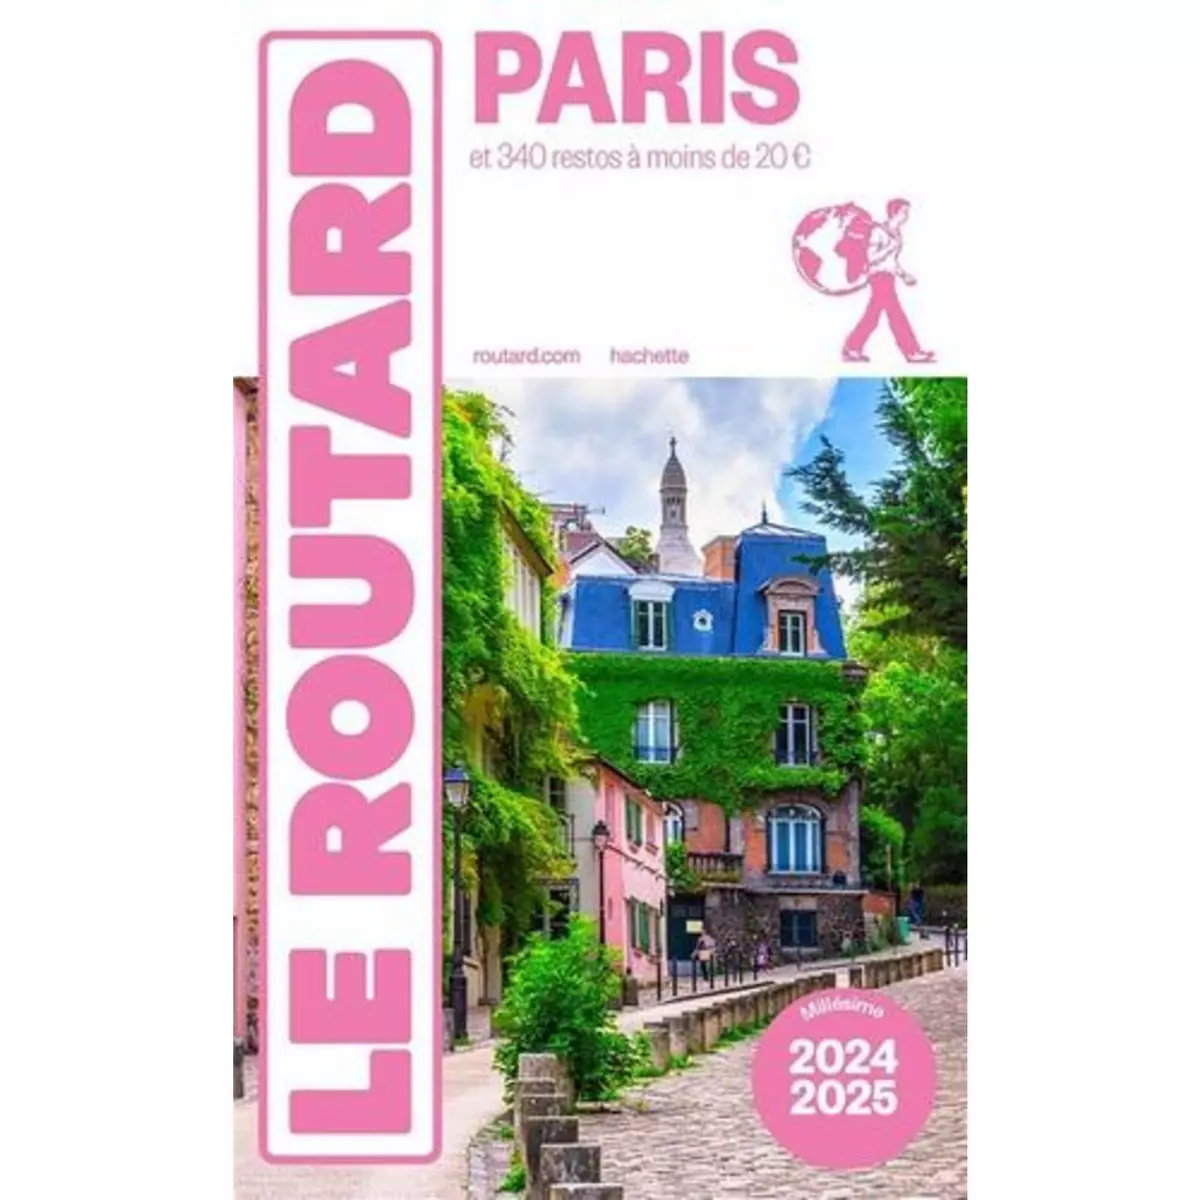  PARIS. EDITION 2024-2025, Le Routard